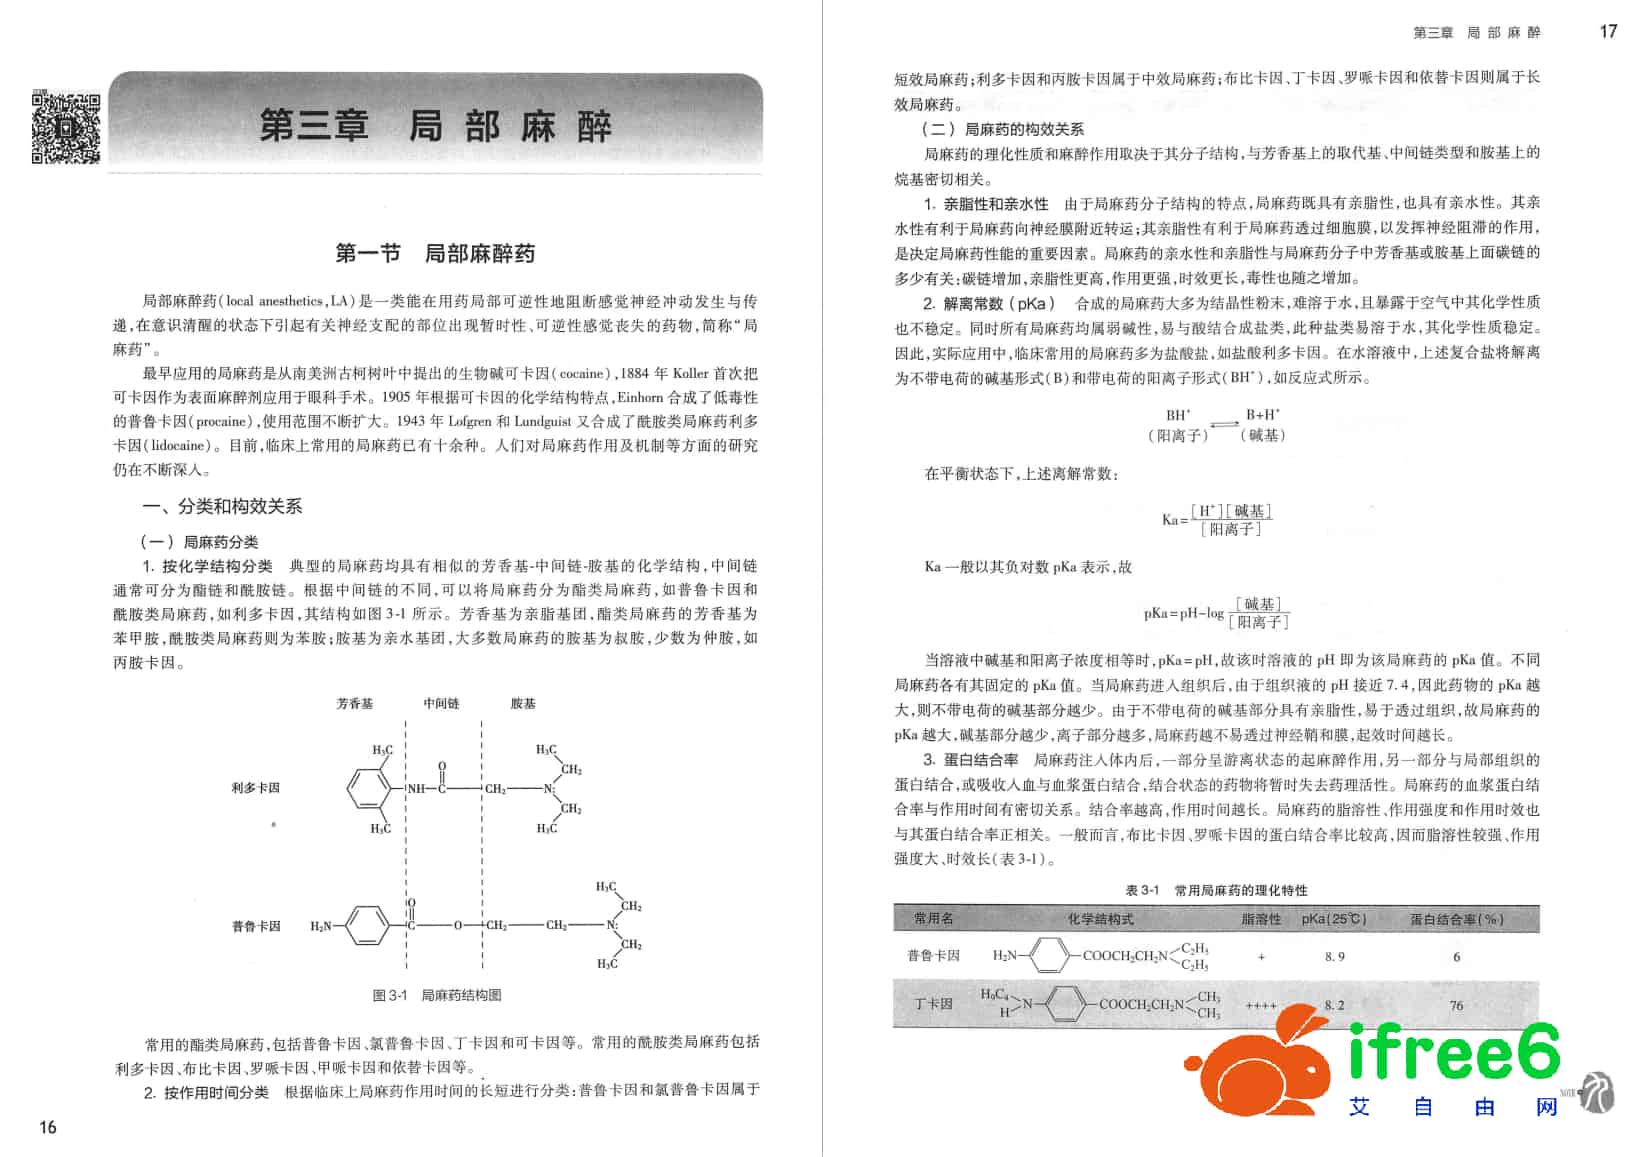 《麻醉学》第4版_李文志,姚尚龙主编pdf | 艾自由网